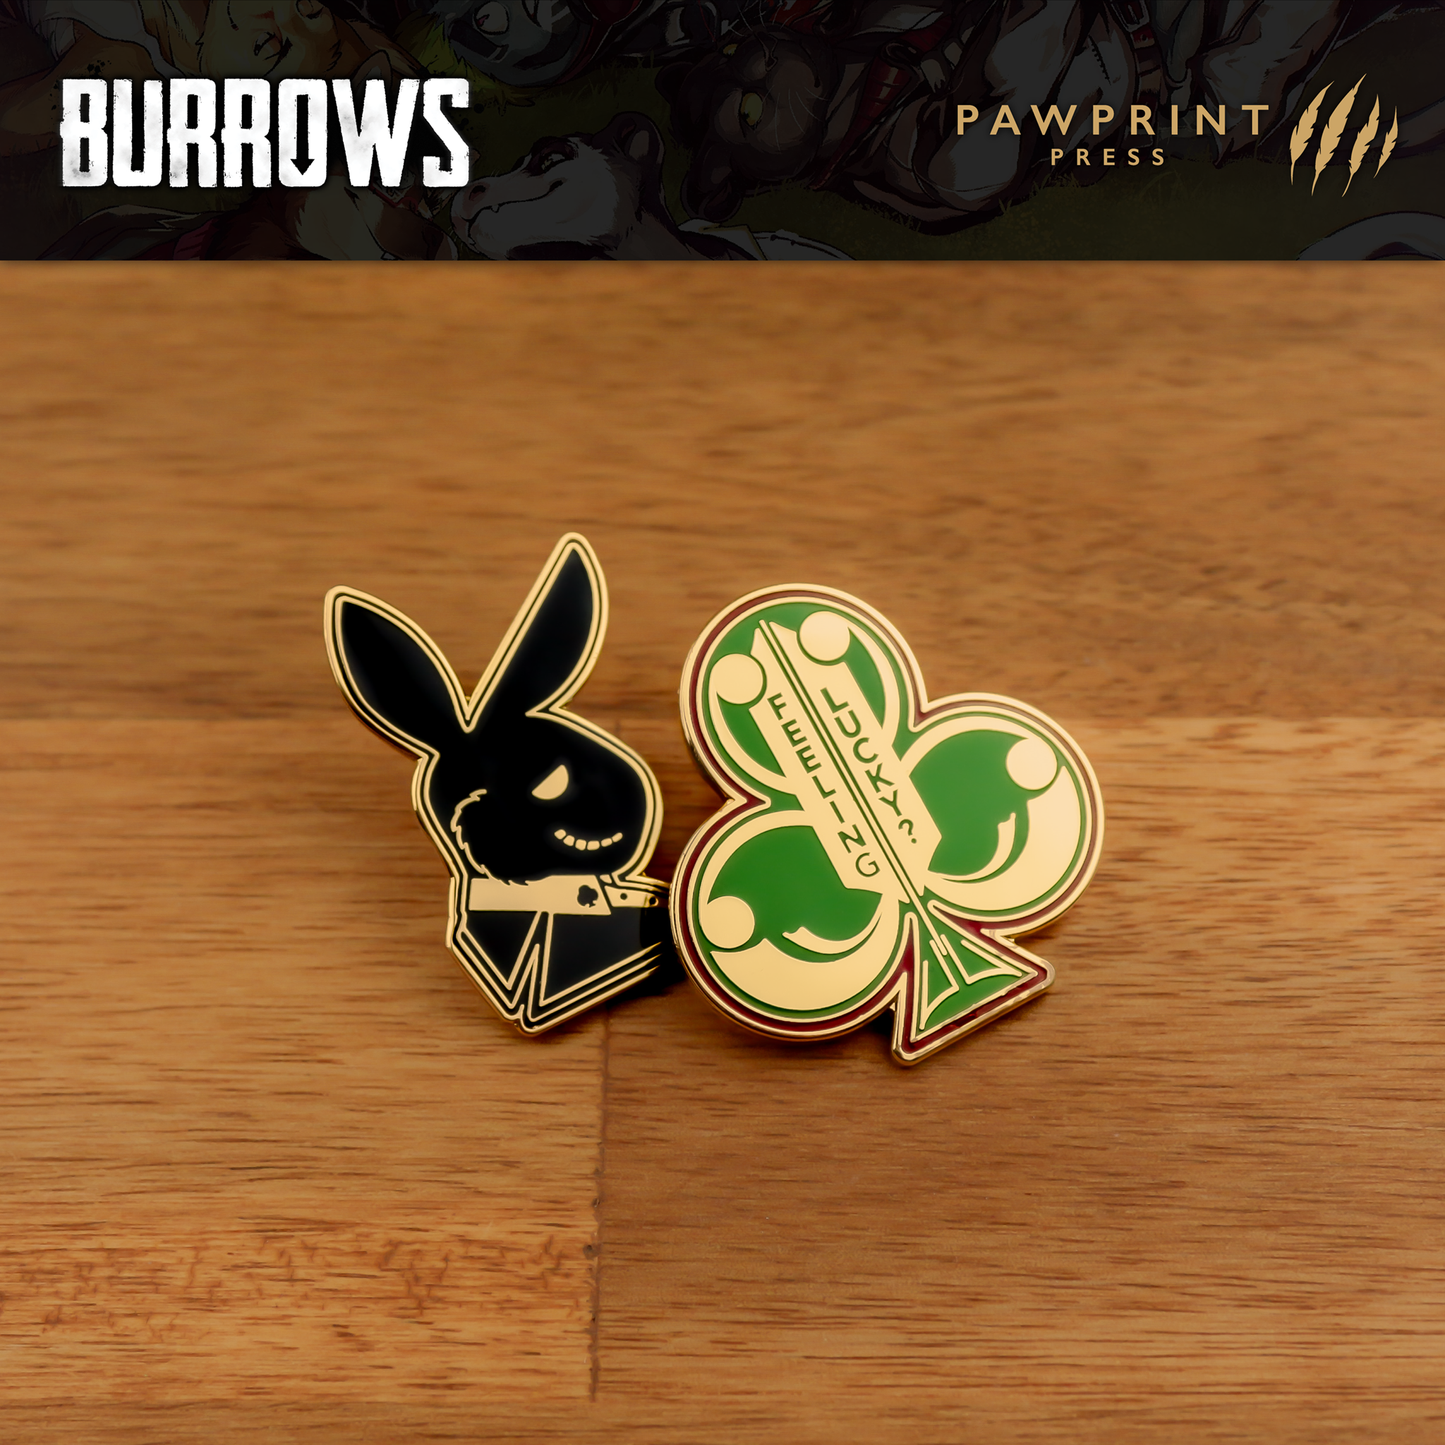 Burrows: Pin & Card Set